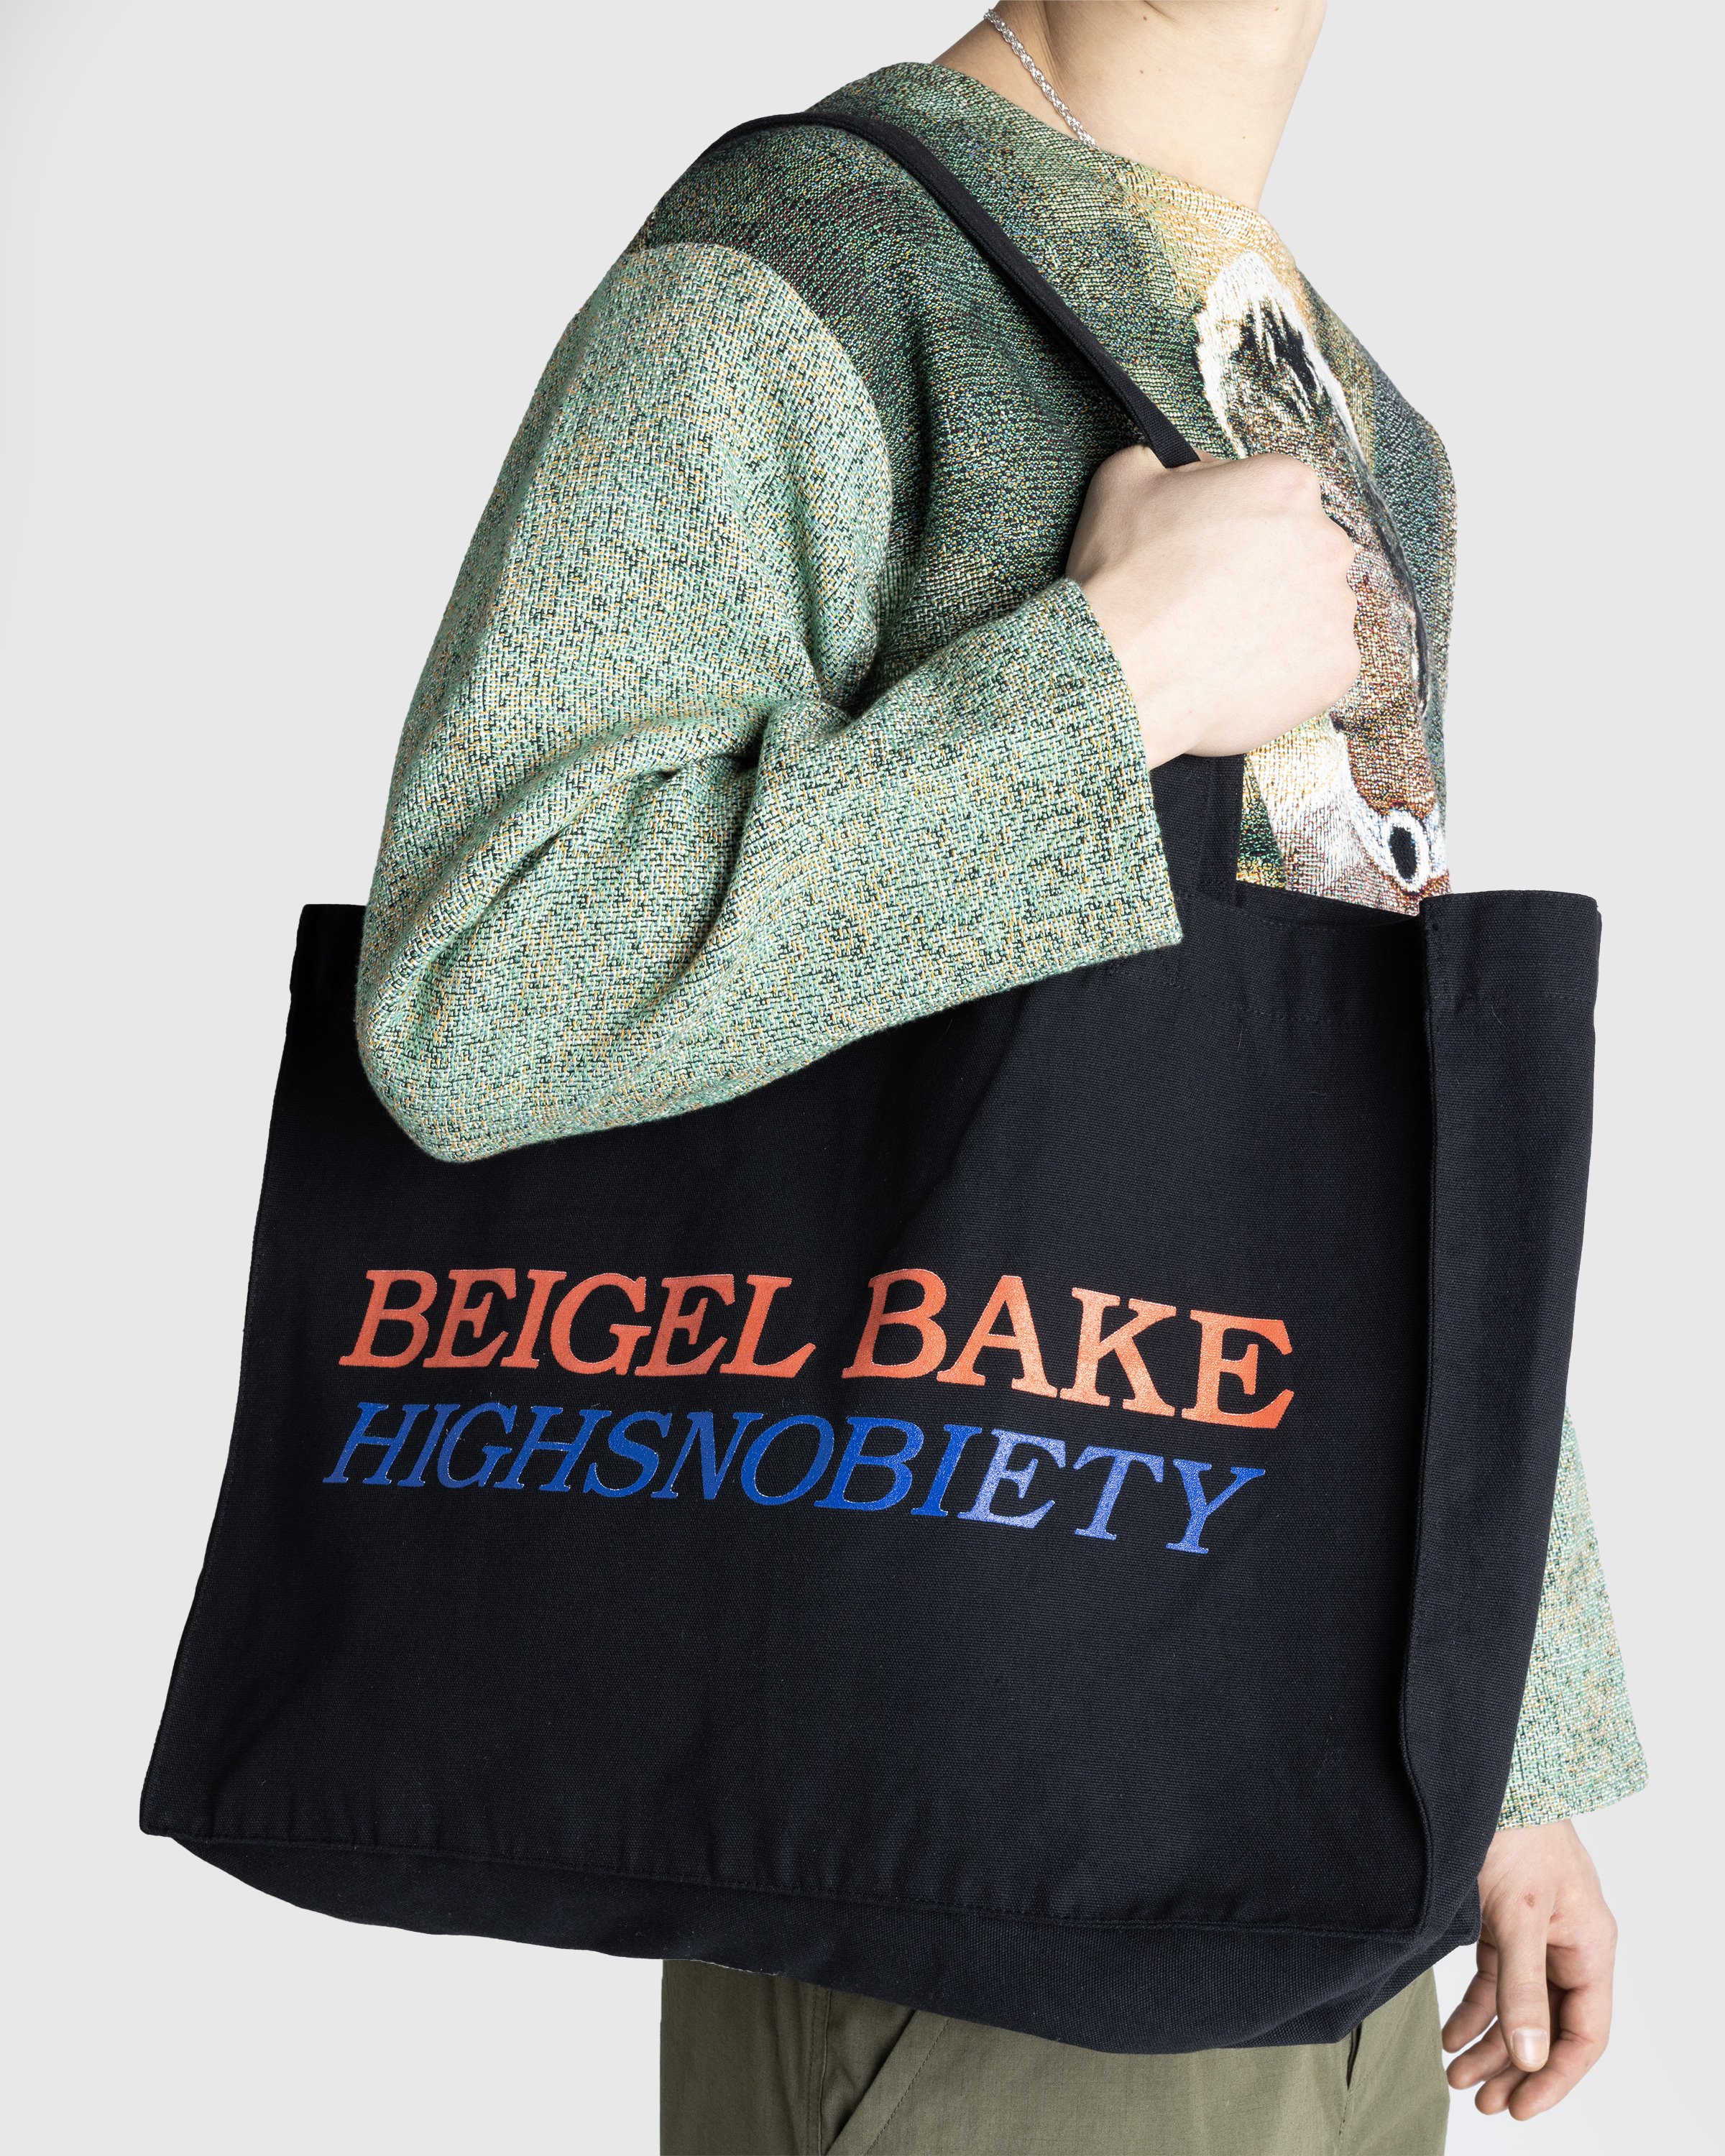 Beigel Bake x Highsnobiety - Beigel Bake Black Tote - Accessories - Black - Image 3